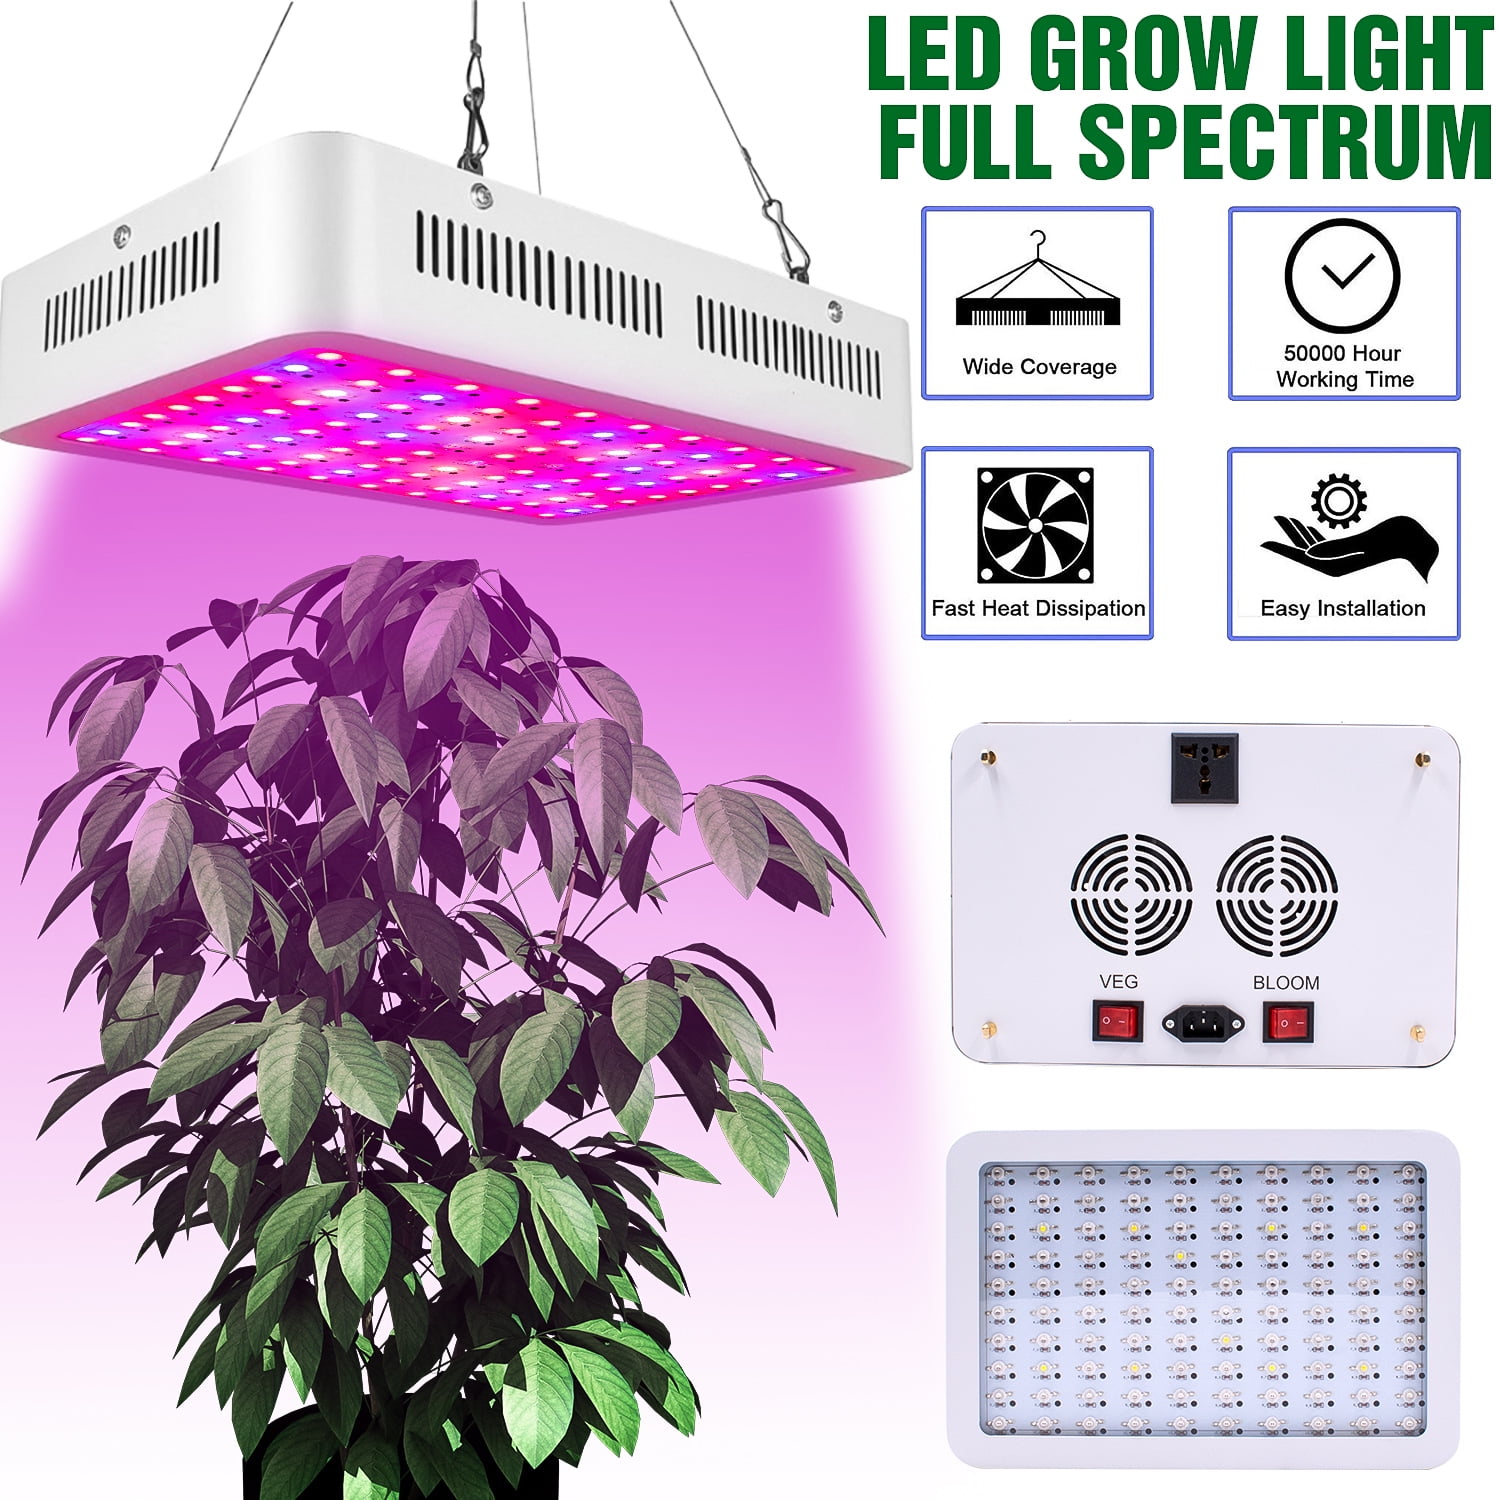 Full Spectrum 3000W LED Grow Light Flower Blooming Lamp for Indoor Plants Veg US 